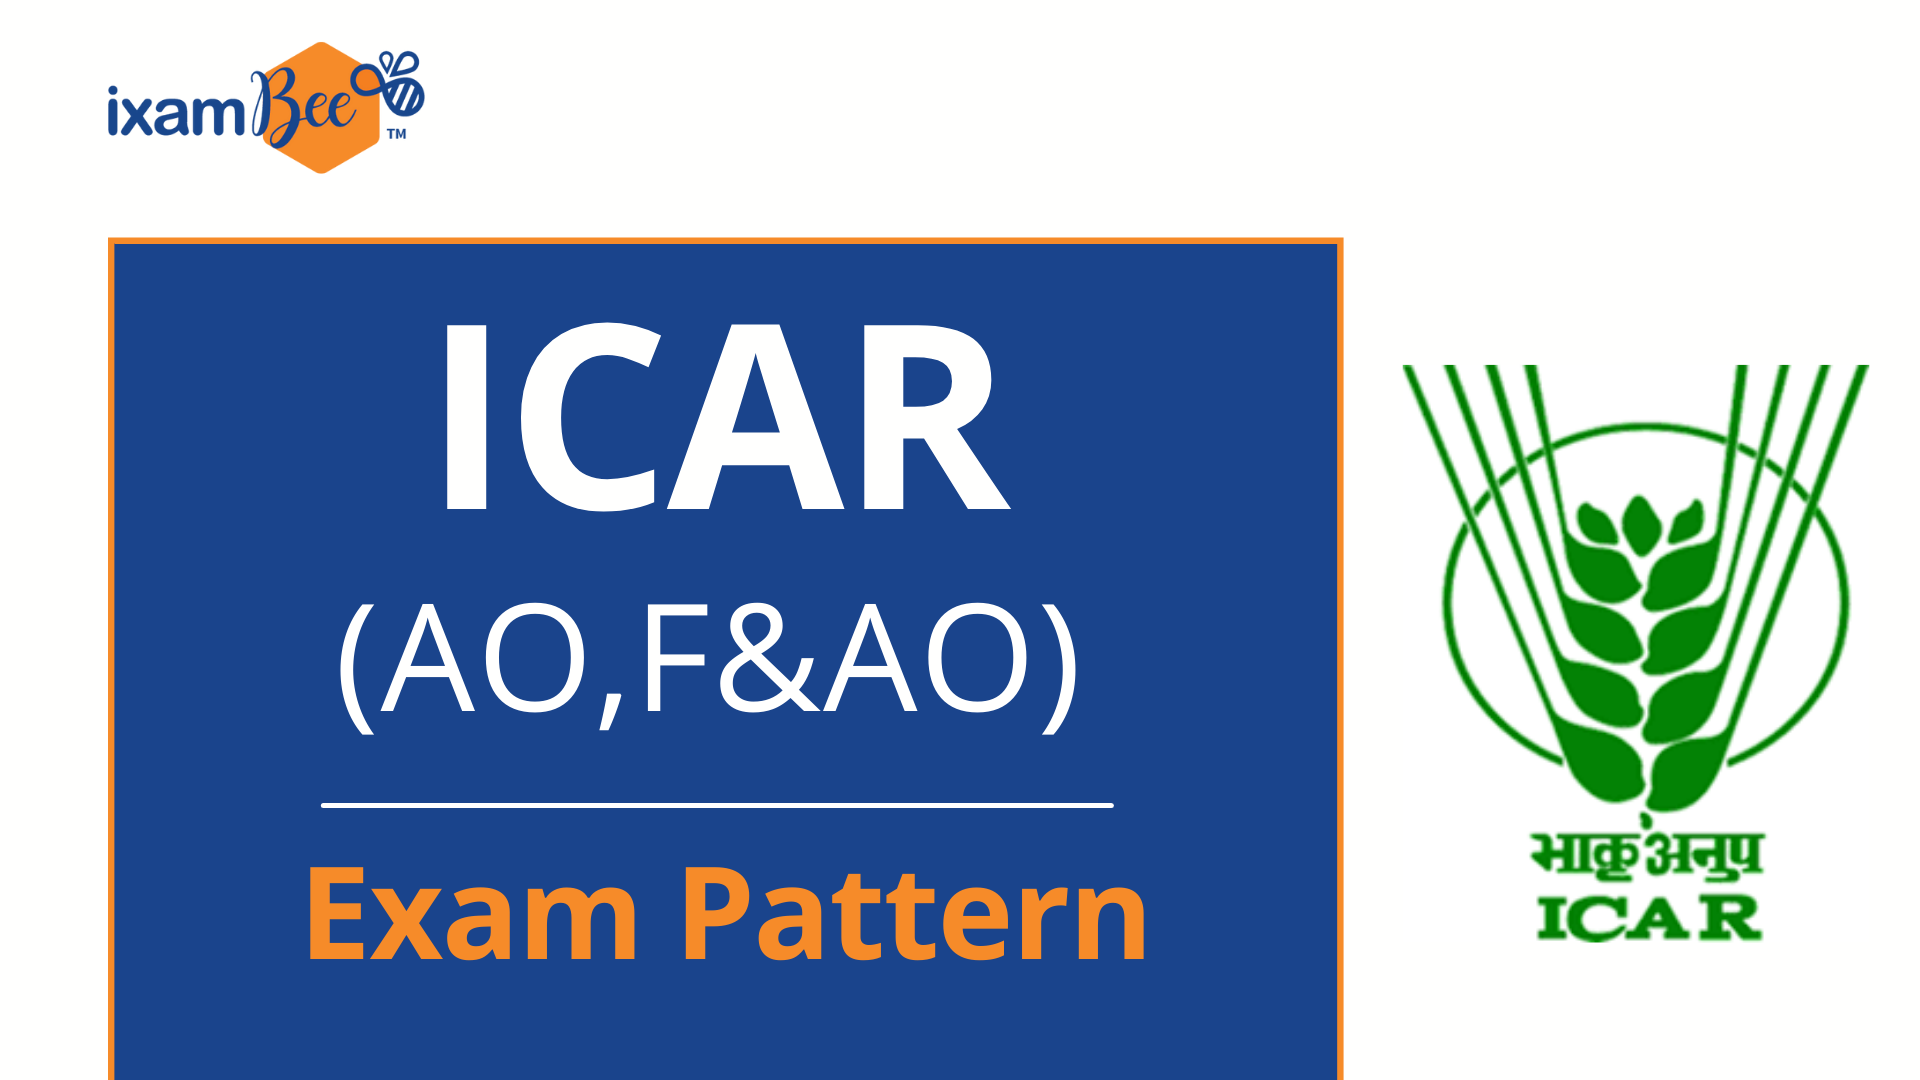 ICAR exam pattern